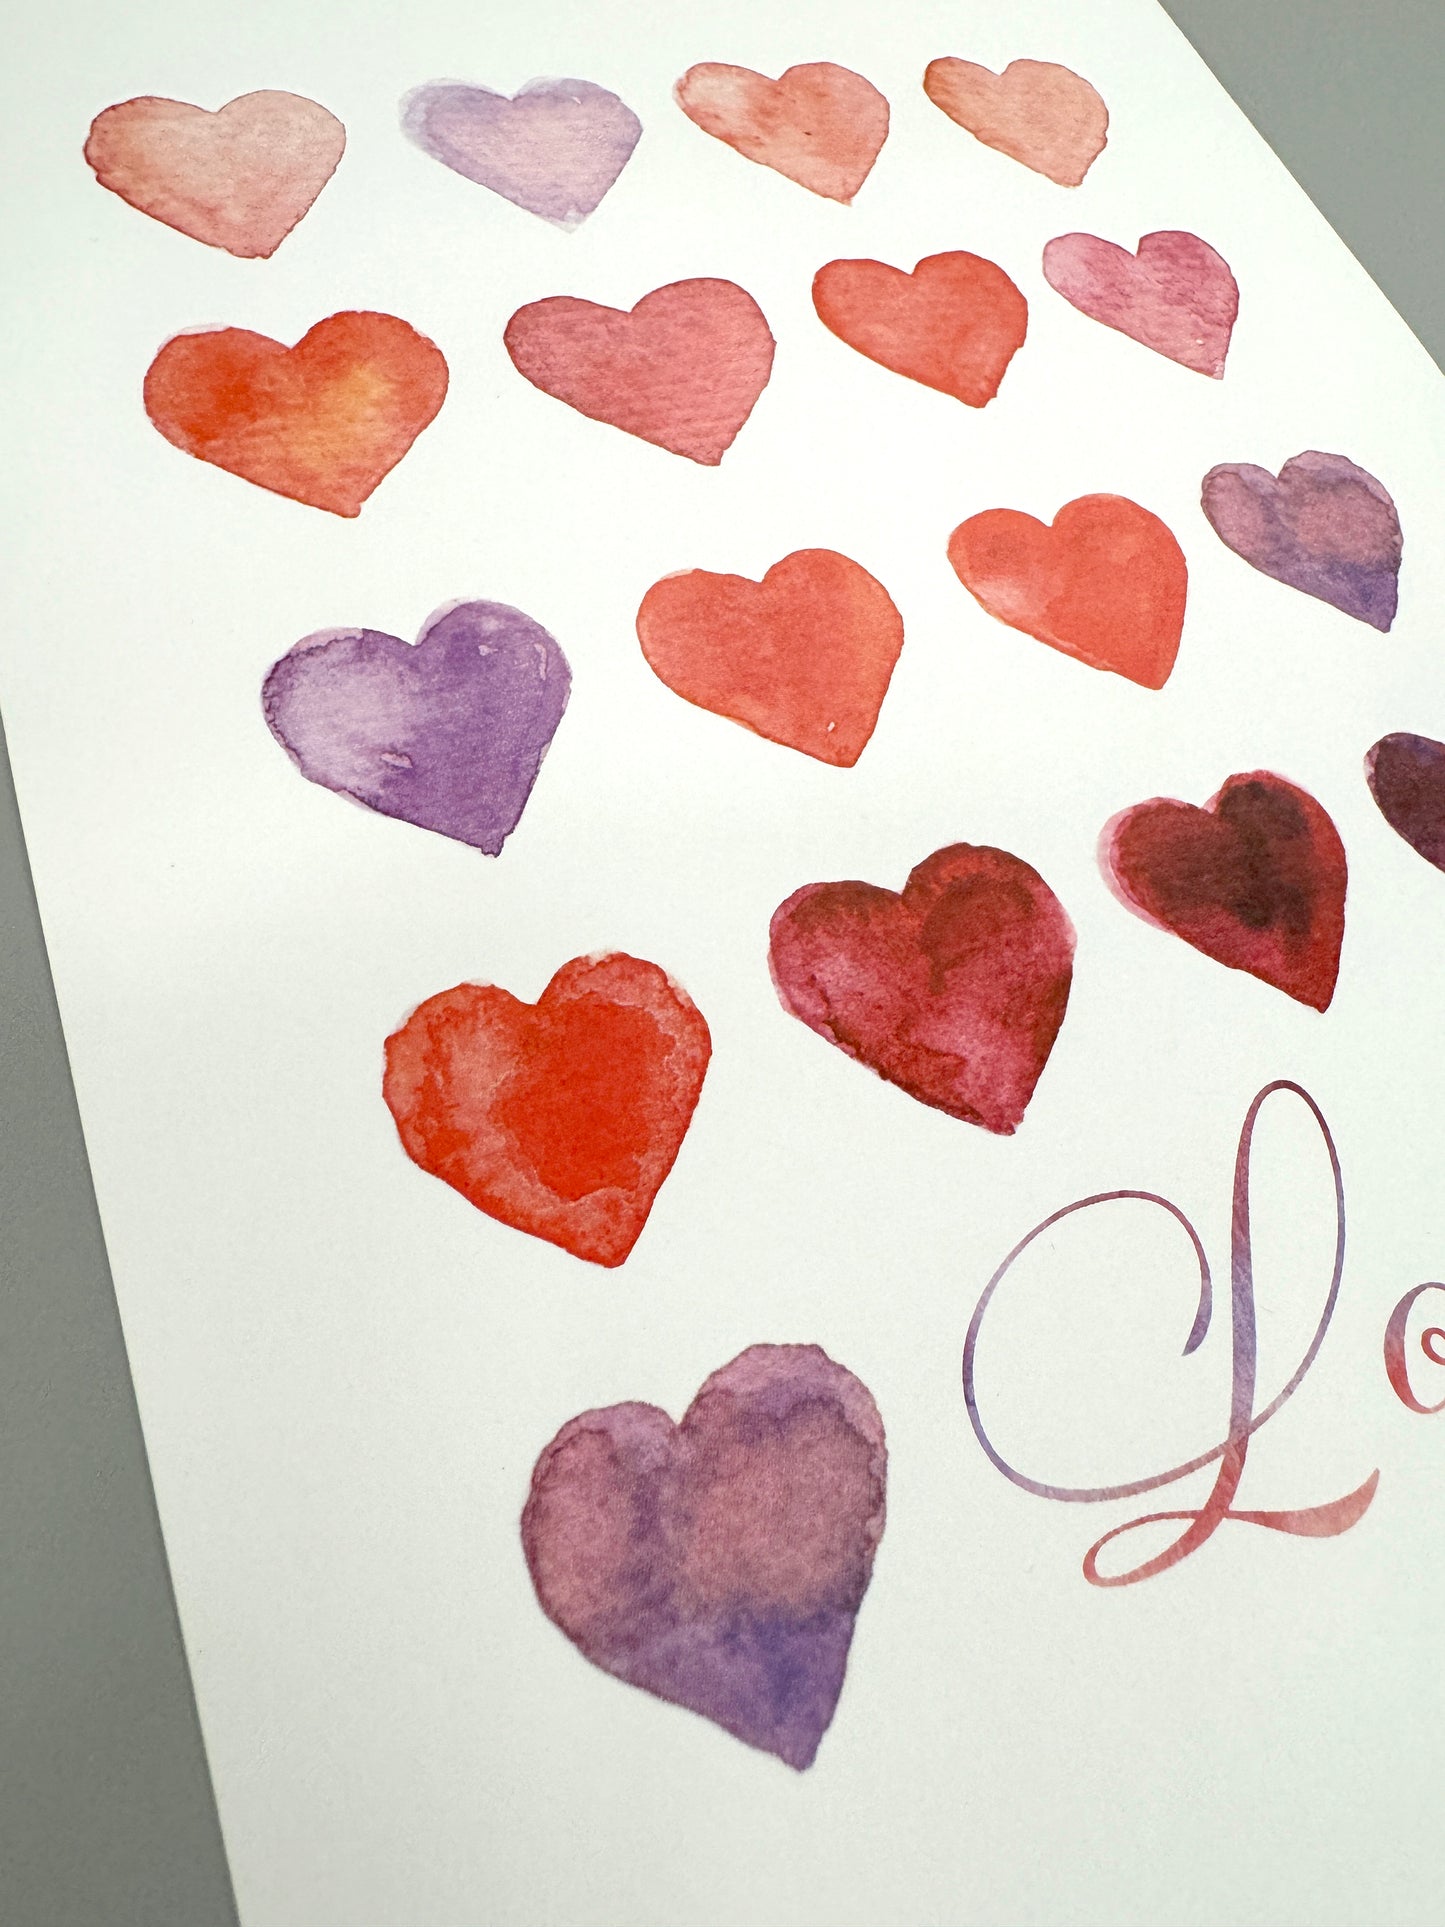 Love Multi-Hearts Print